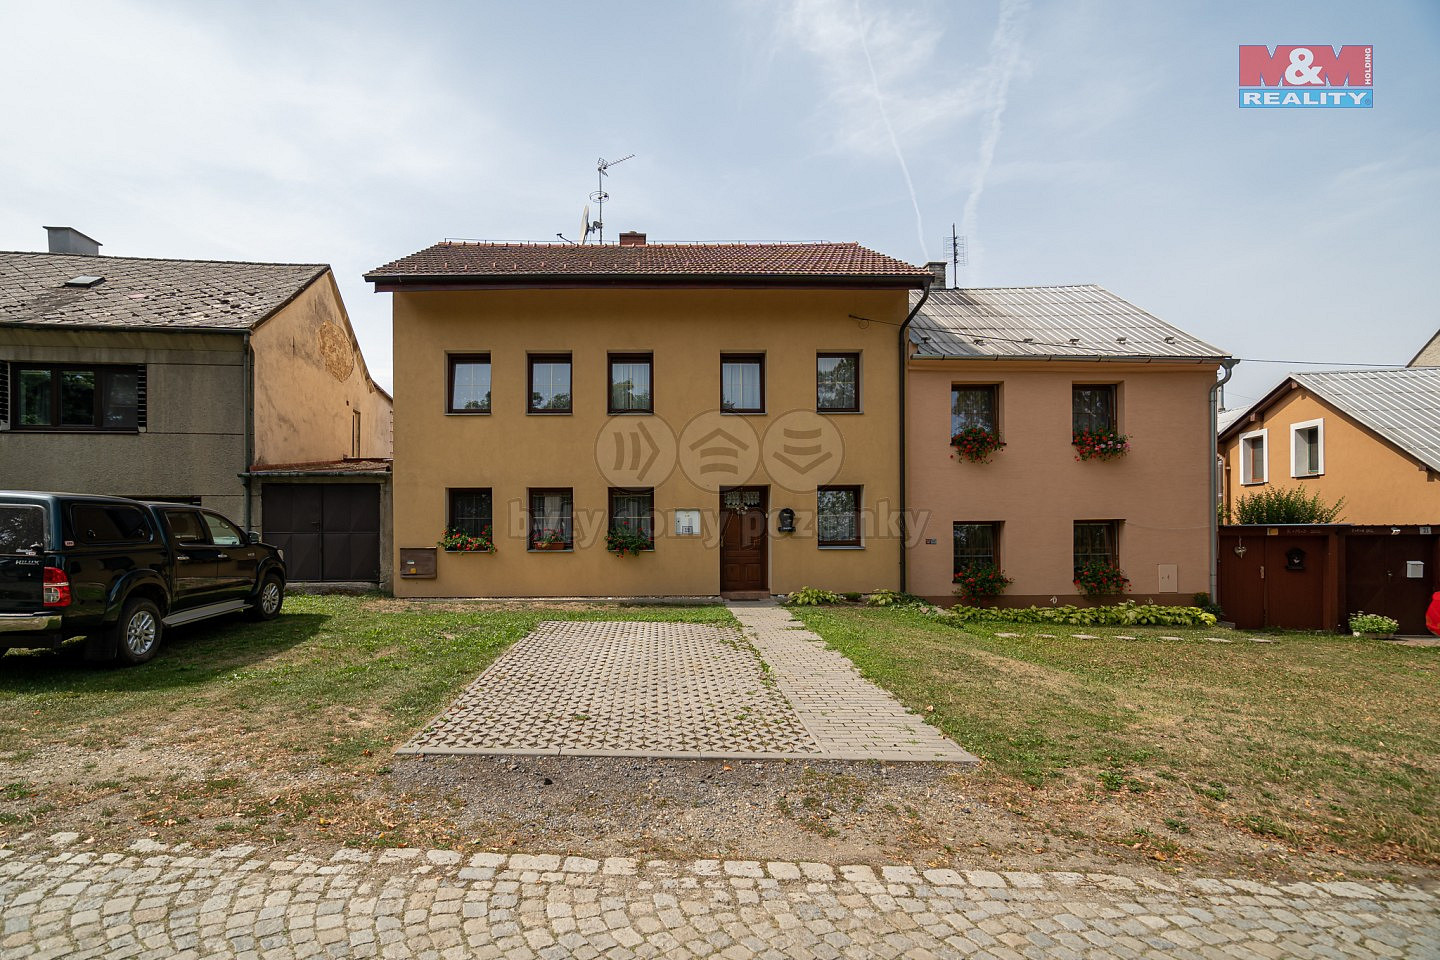 Hrad, Náměšť na Hané, okres Olomouc